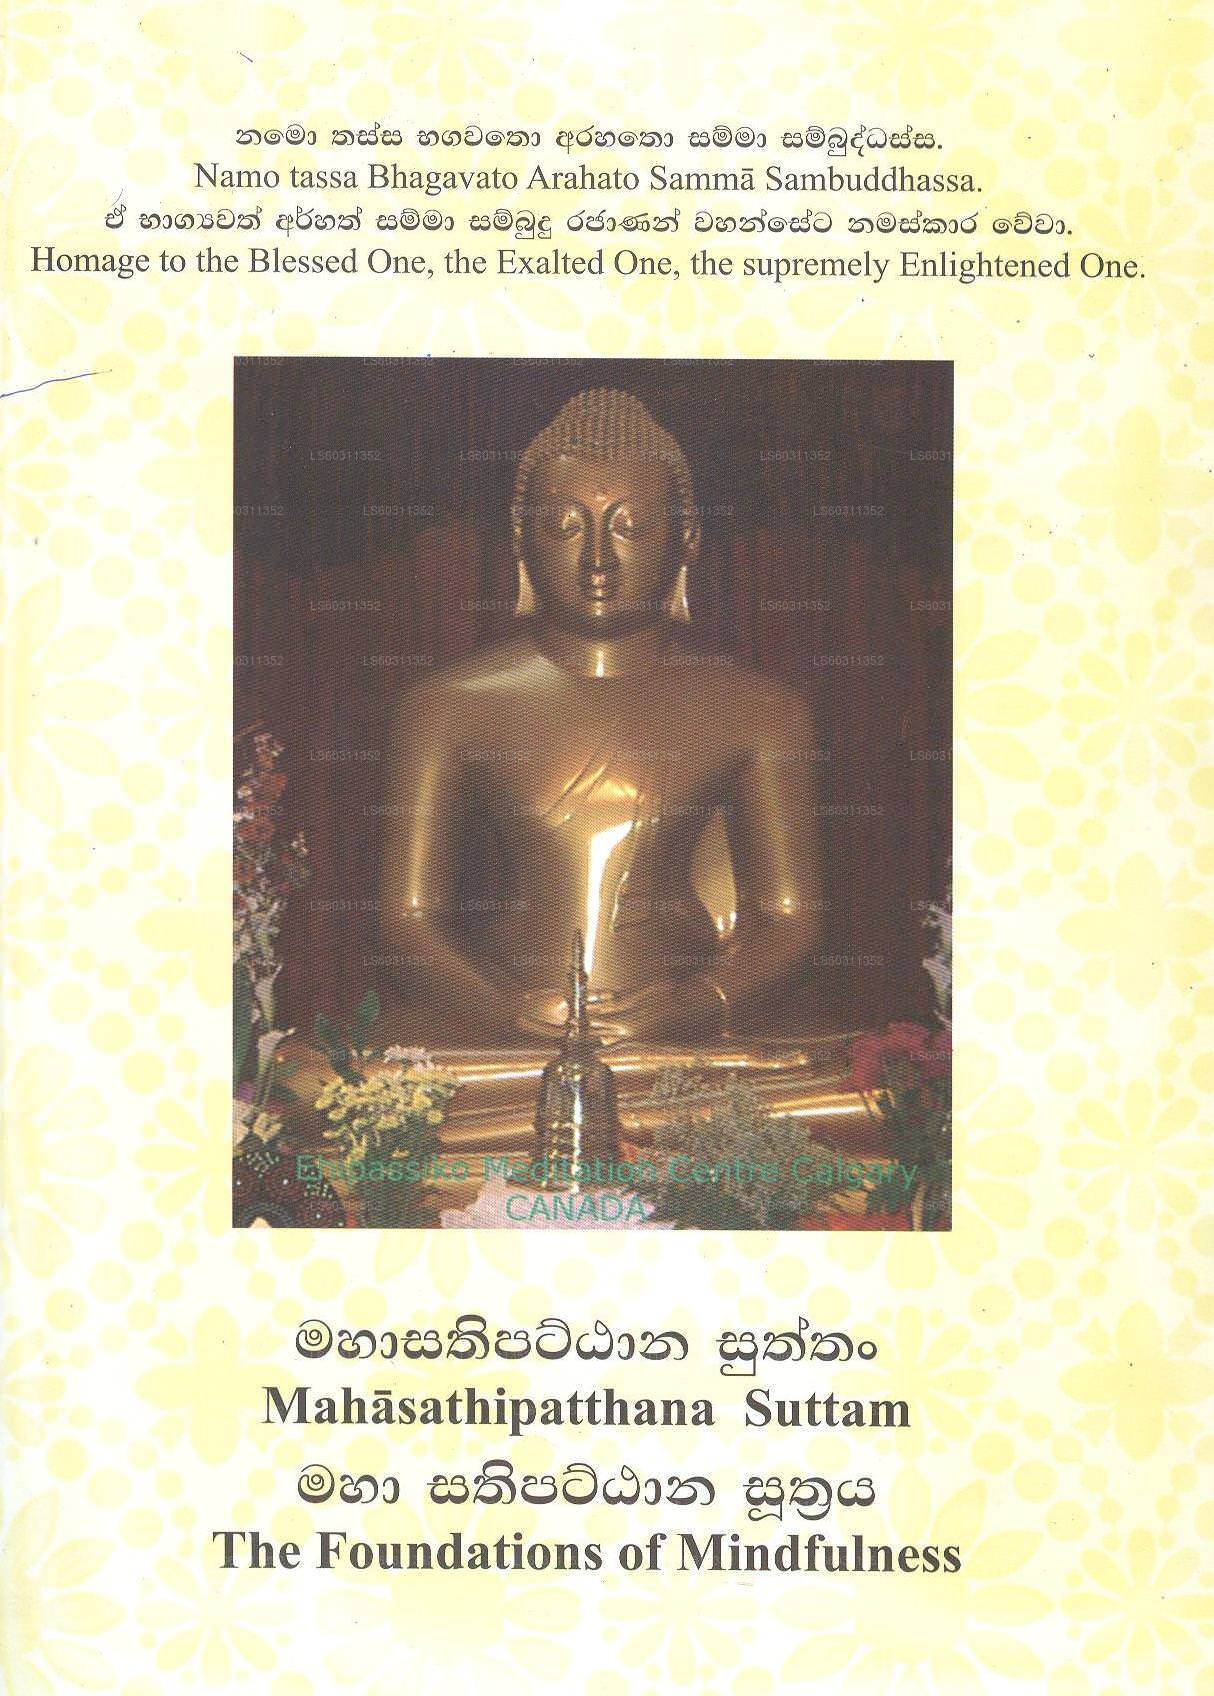 Maha Sathipattana Sutraya